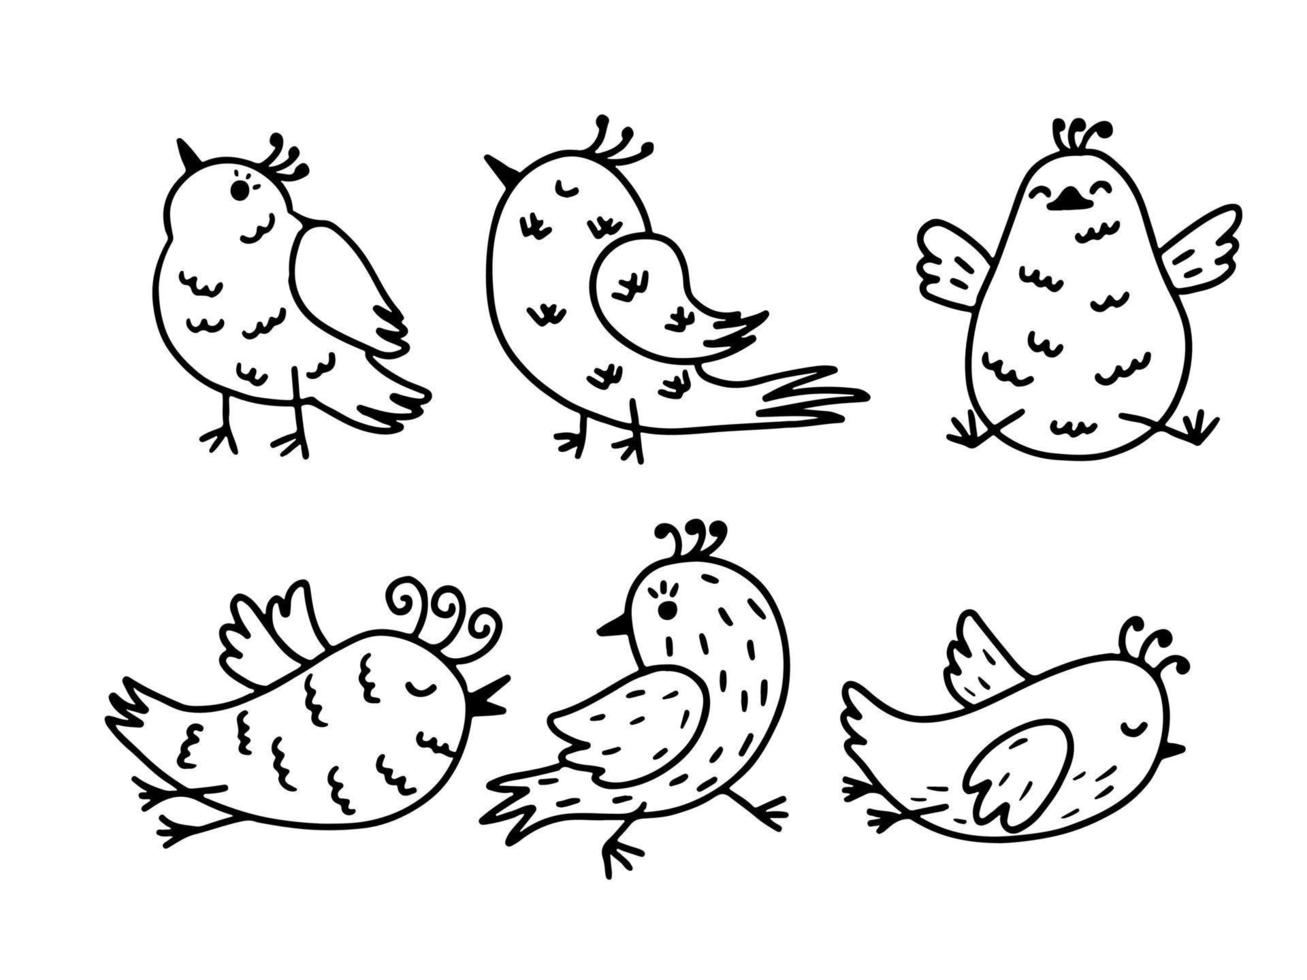 colección de aves. conjunto de lindos pájaros dibujados a mano en estilo garabato. conjunto de vectores negro sobre blanco.